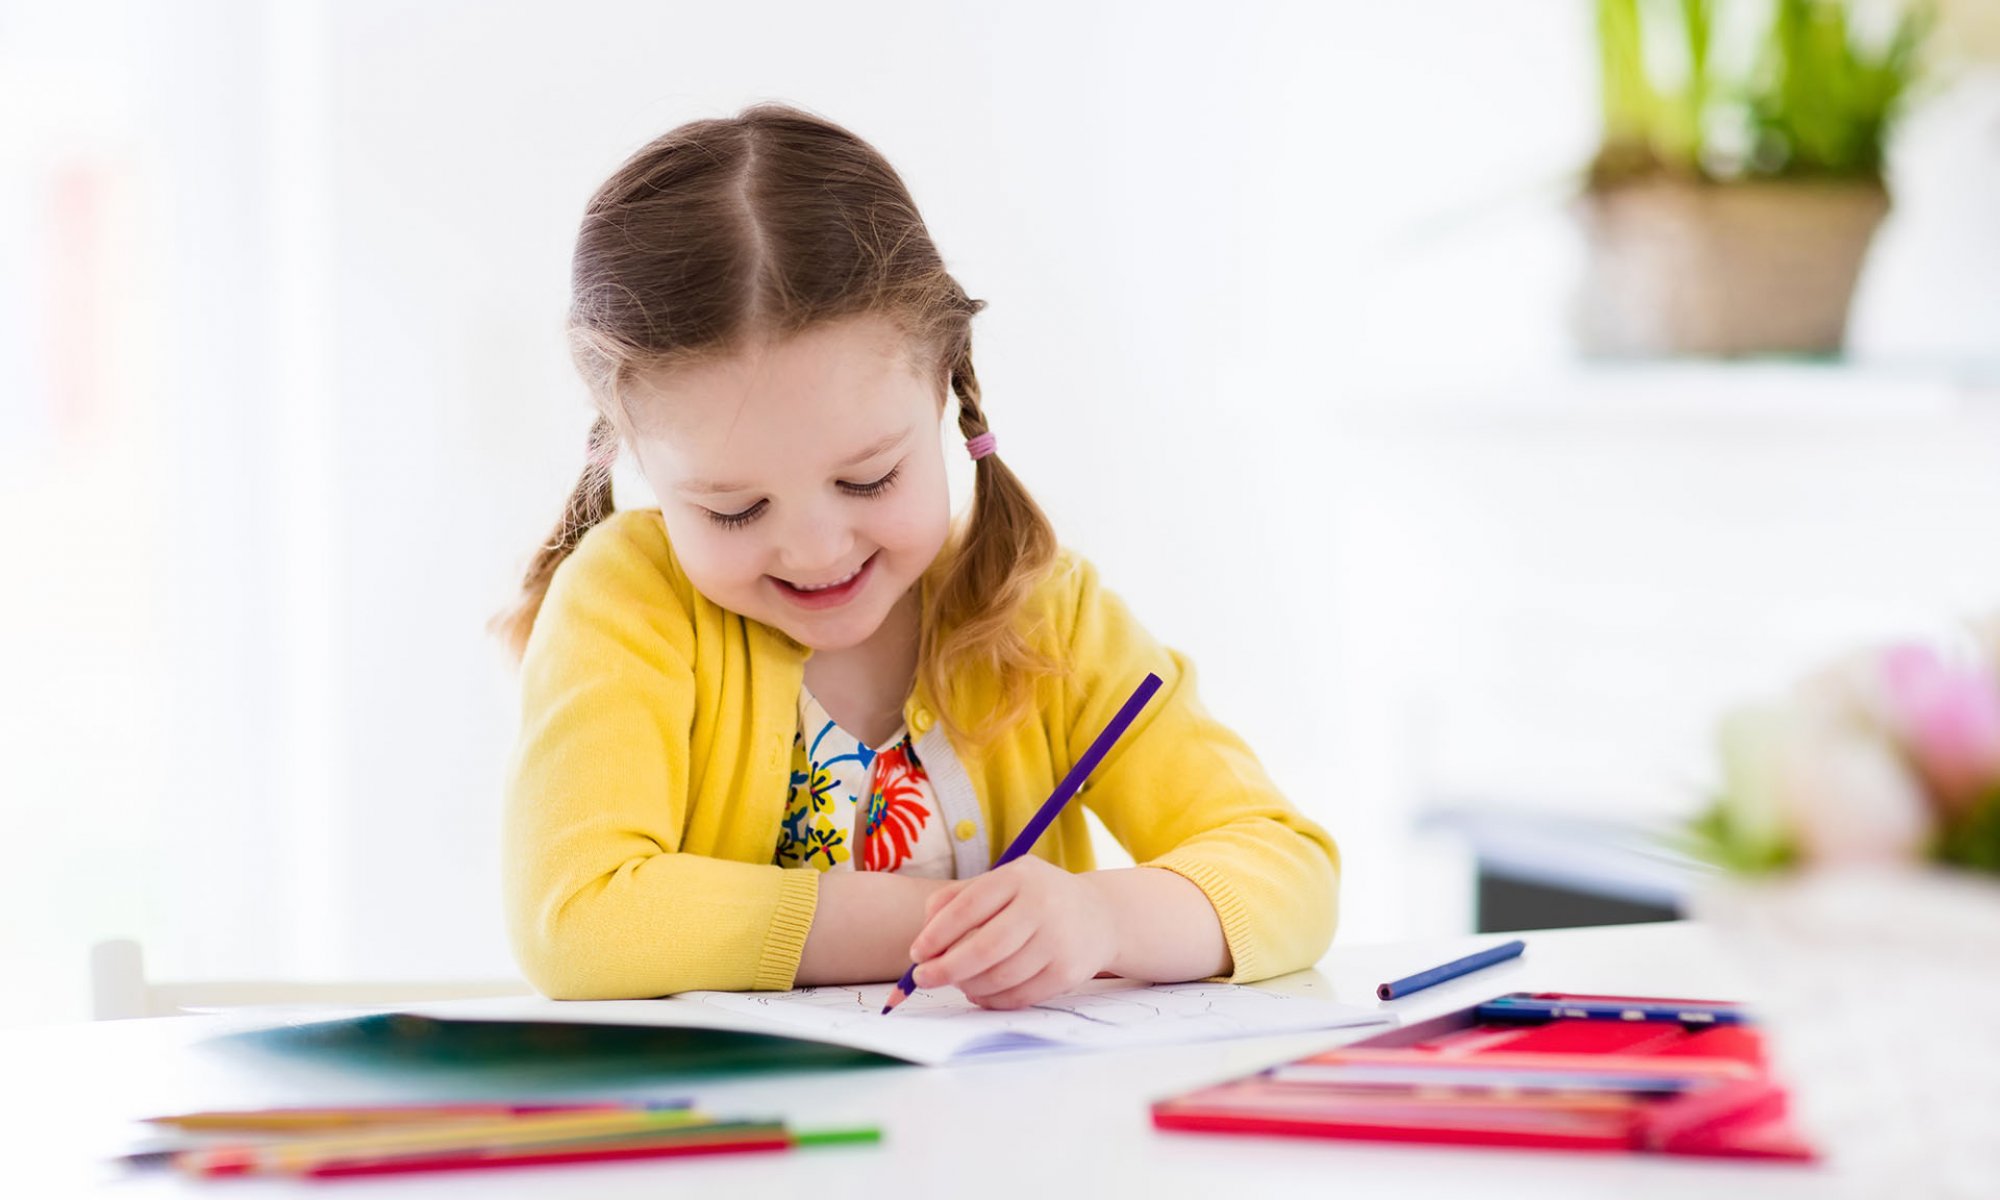 Otroci z ustvarjanjem razvijajo ročne spretnosti.